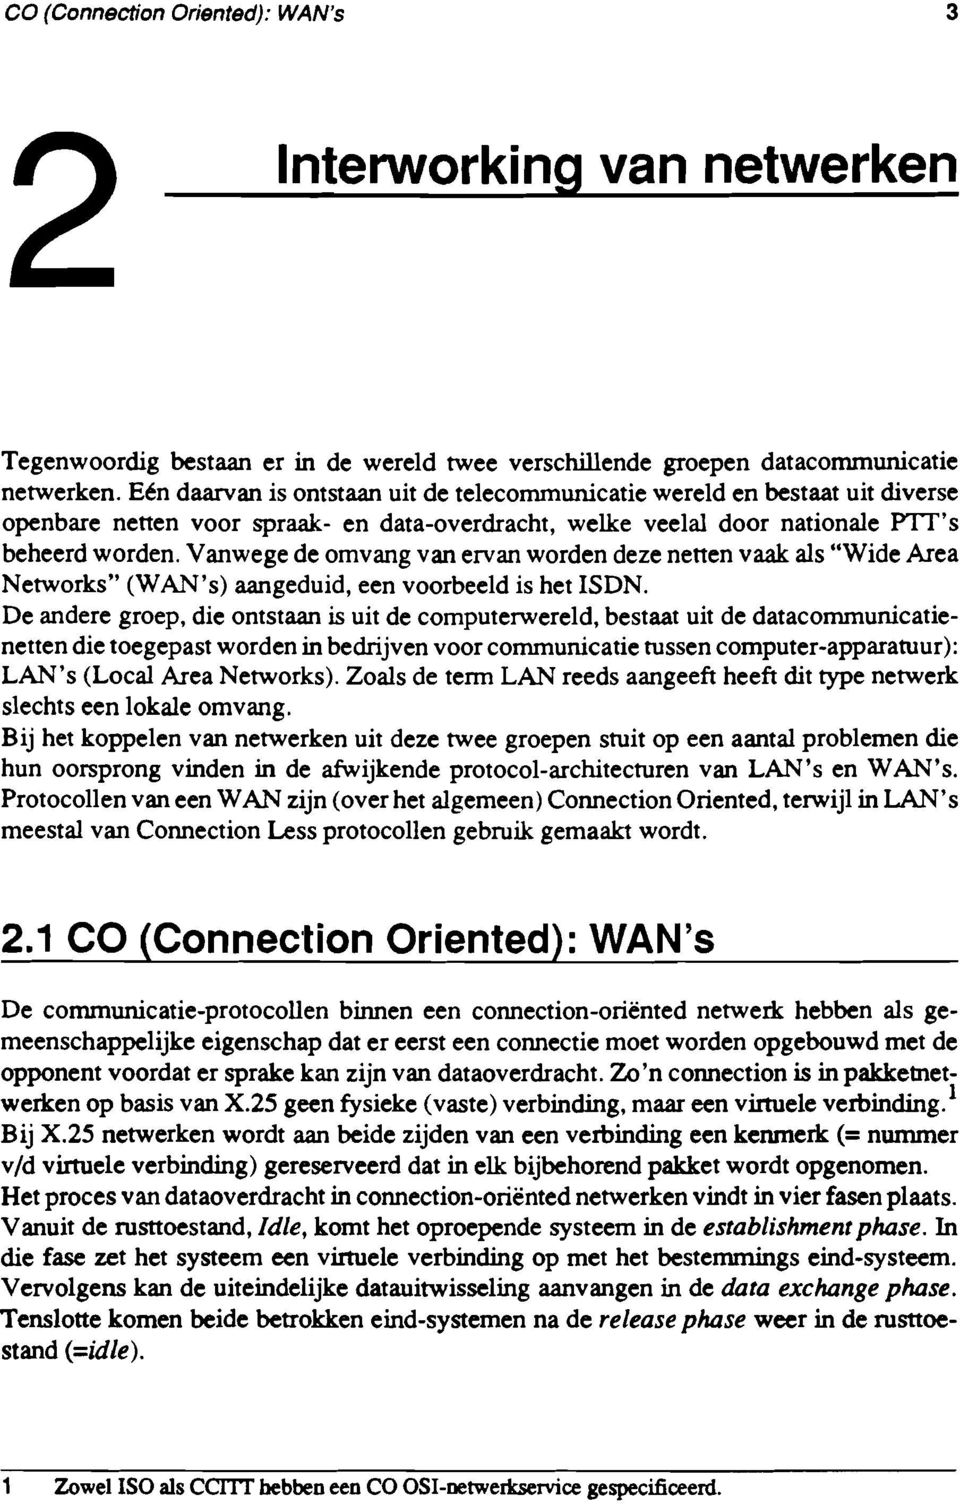 Vanwege de omvang van ervan worden deze netten vaak als "Wide Area Networks" (WAN's) aangeduid, een voorbeeld is het ISDN.